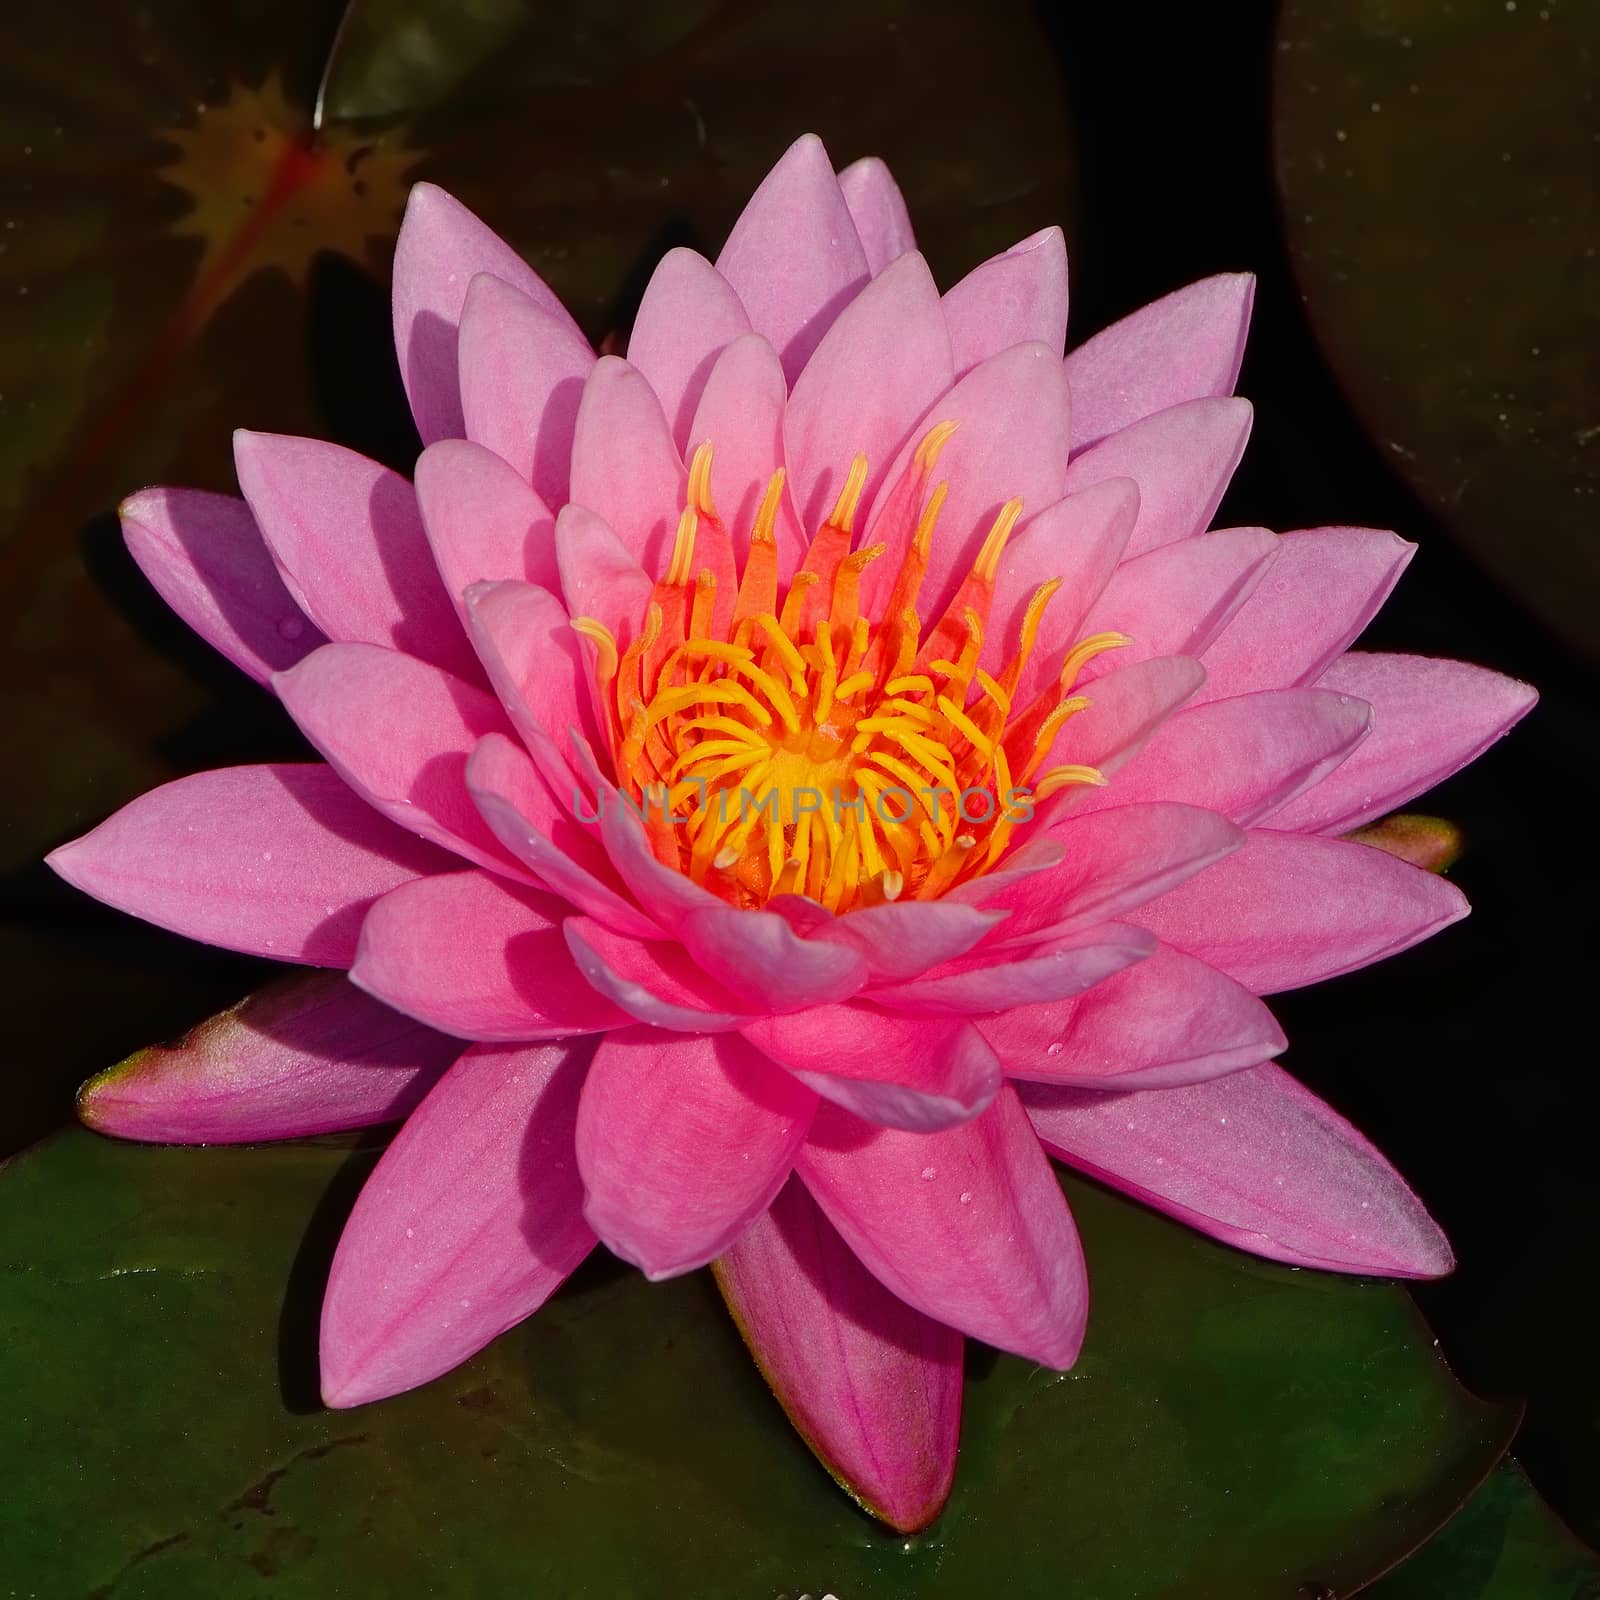 Closeup of beautiful pink waterlily